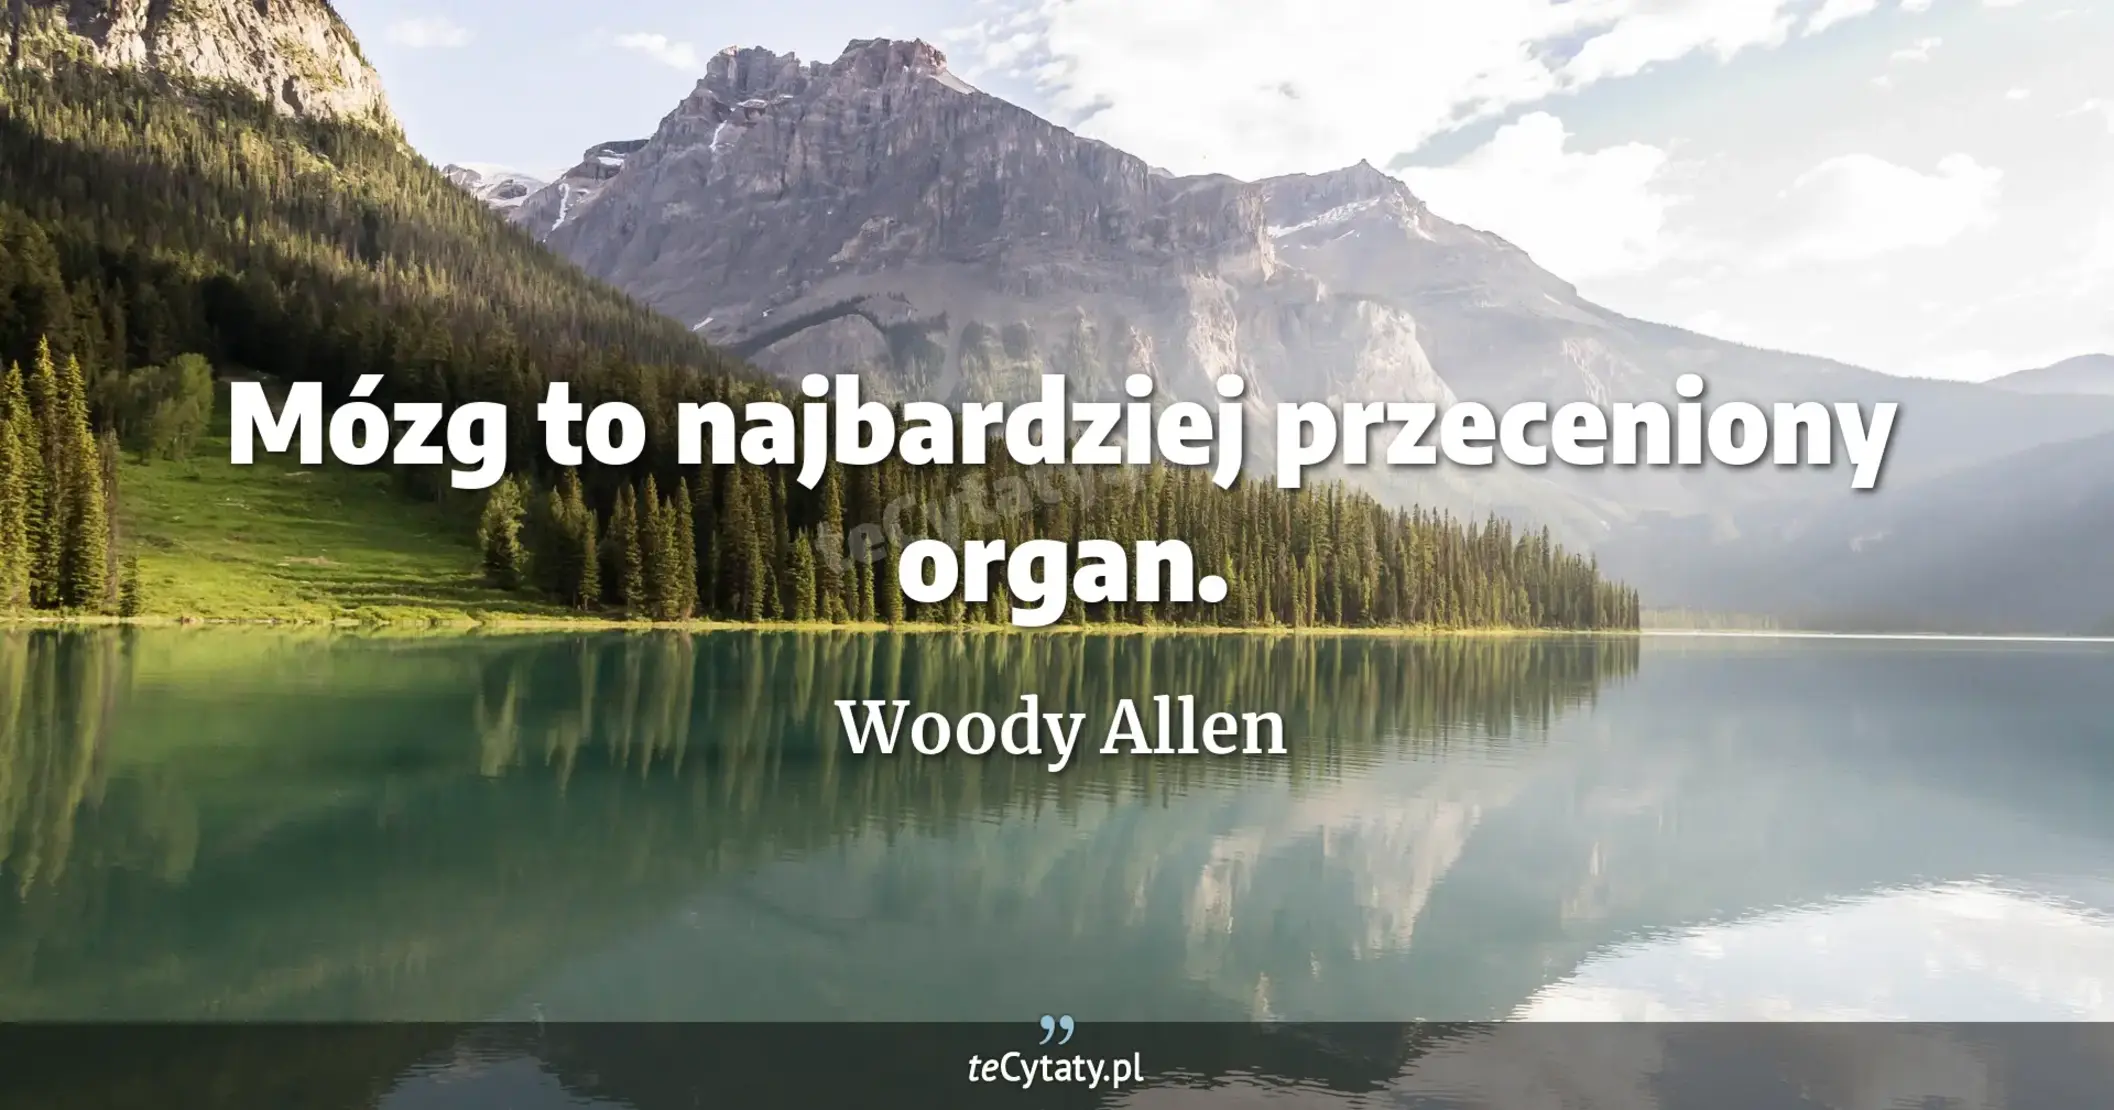 Mózg to najbardziej przeceniony organ. - Woody Allen